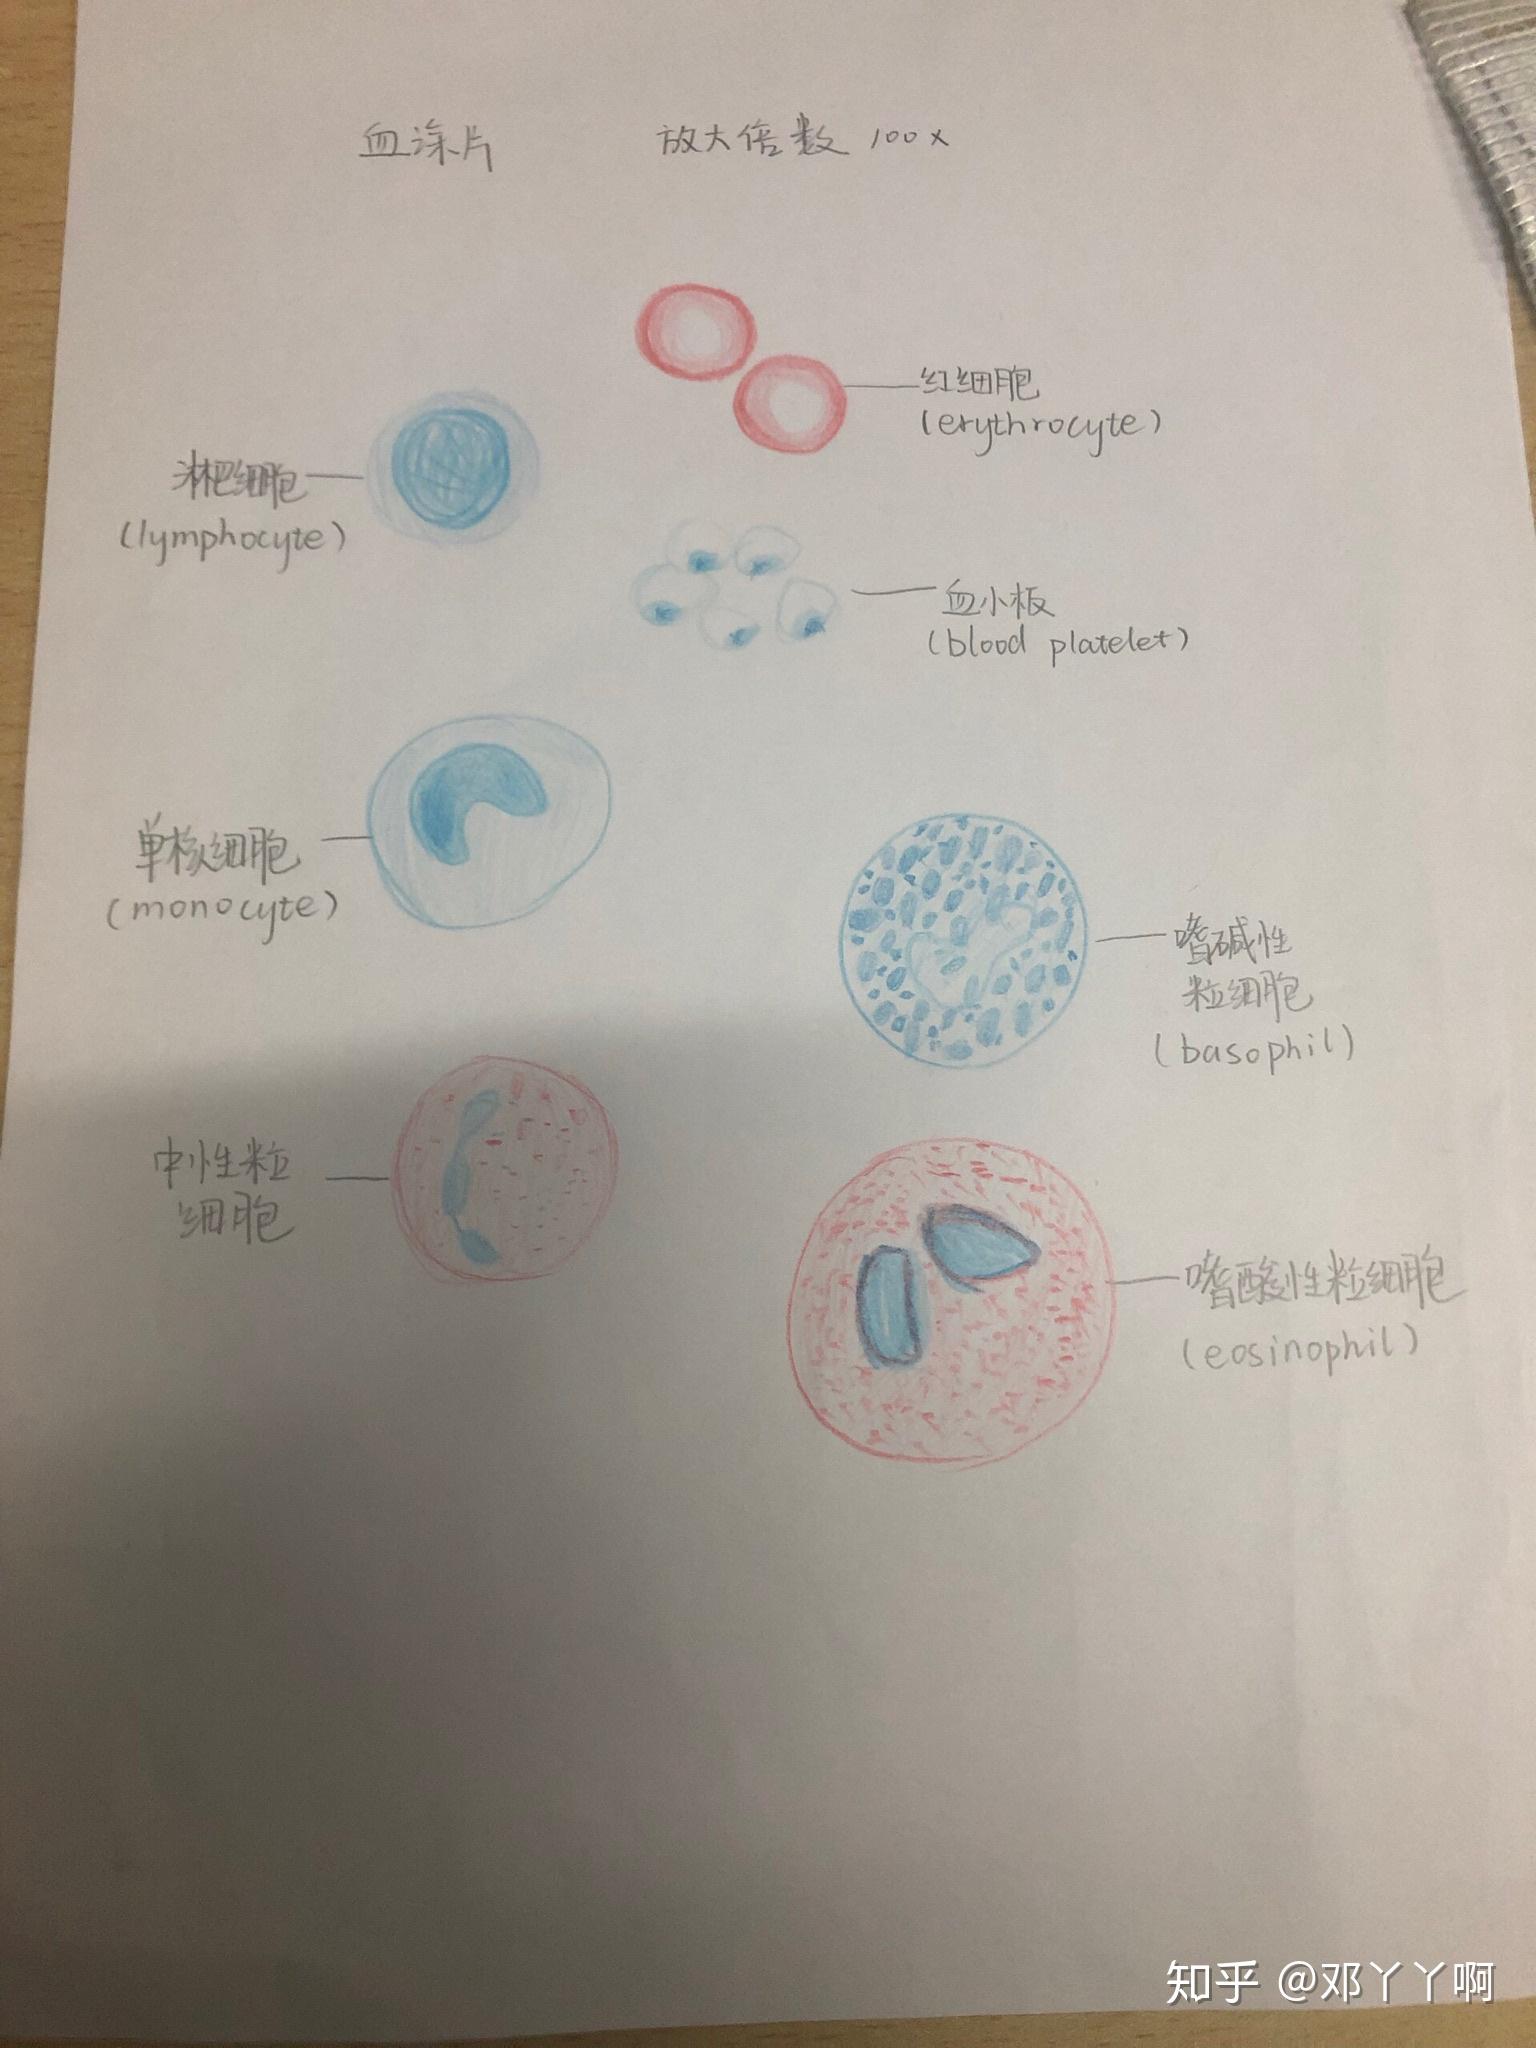 血细胞简图图片